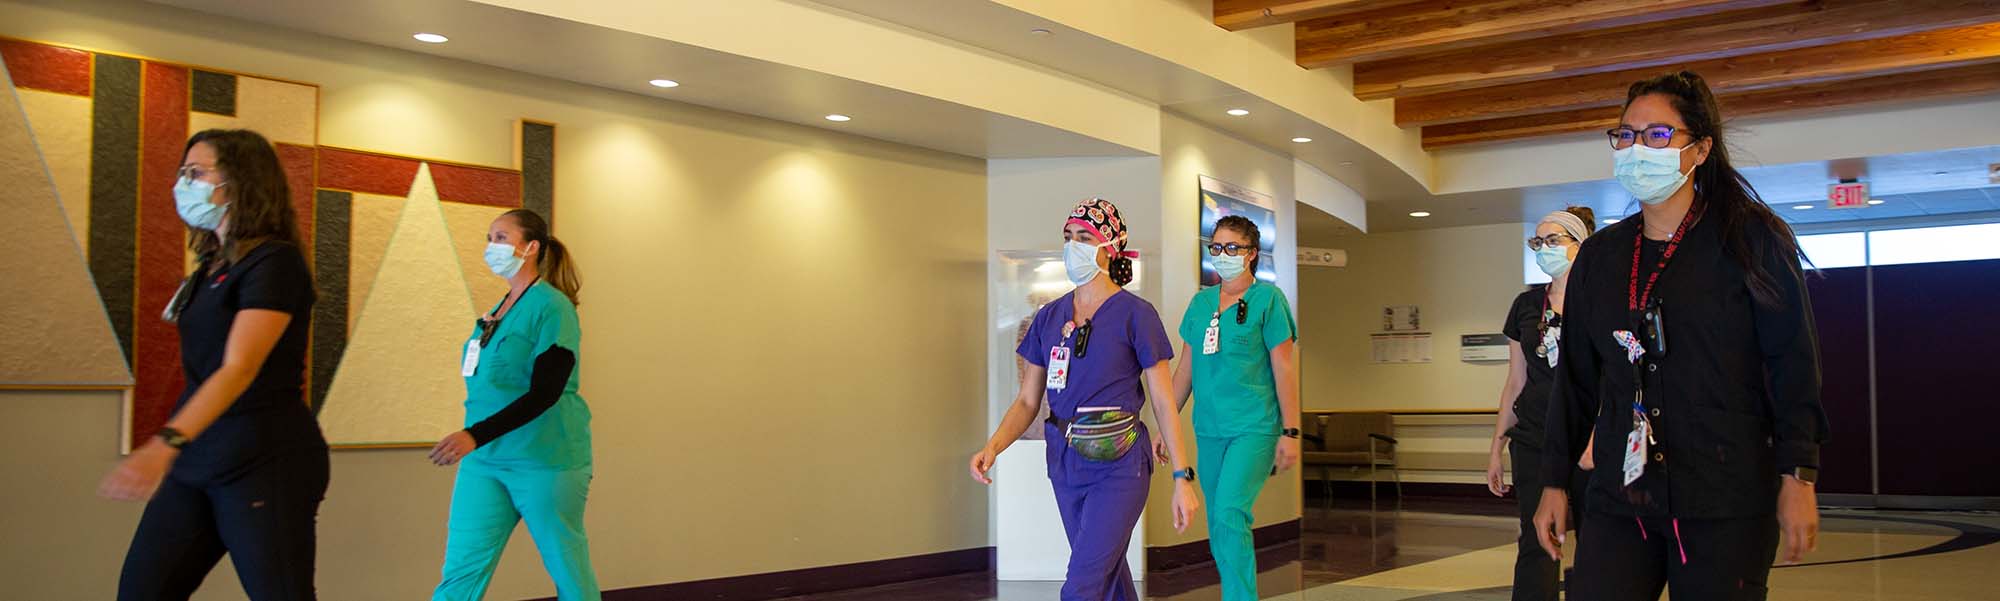 Enfermeras de la UNM caminando por un pasillo